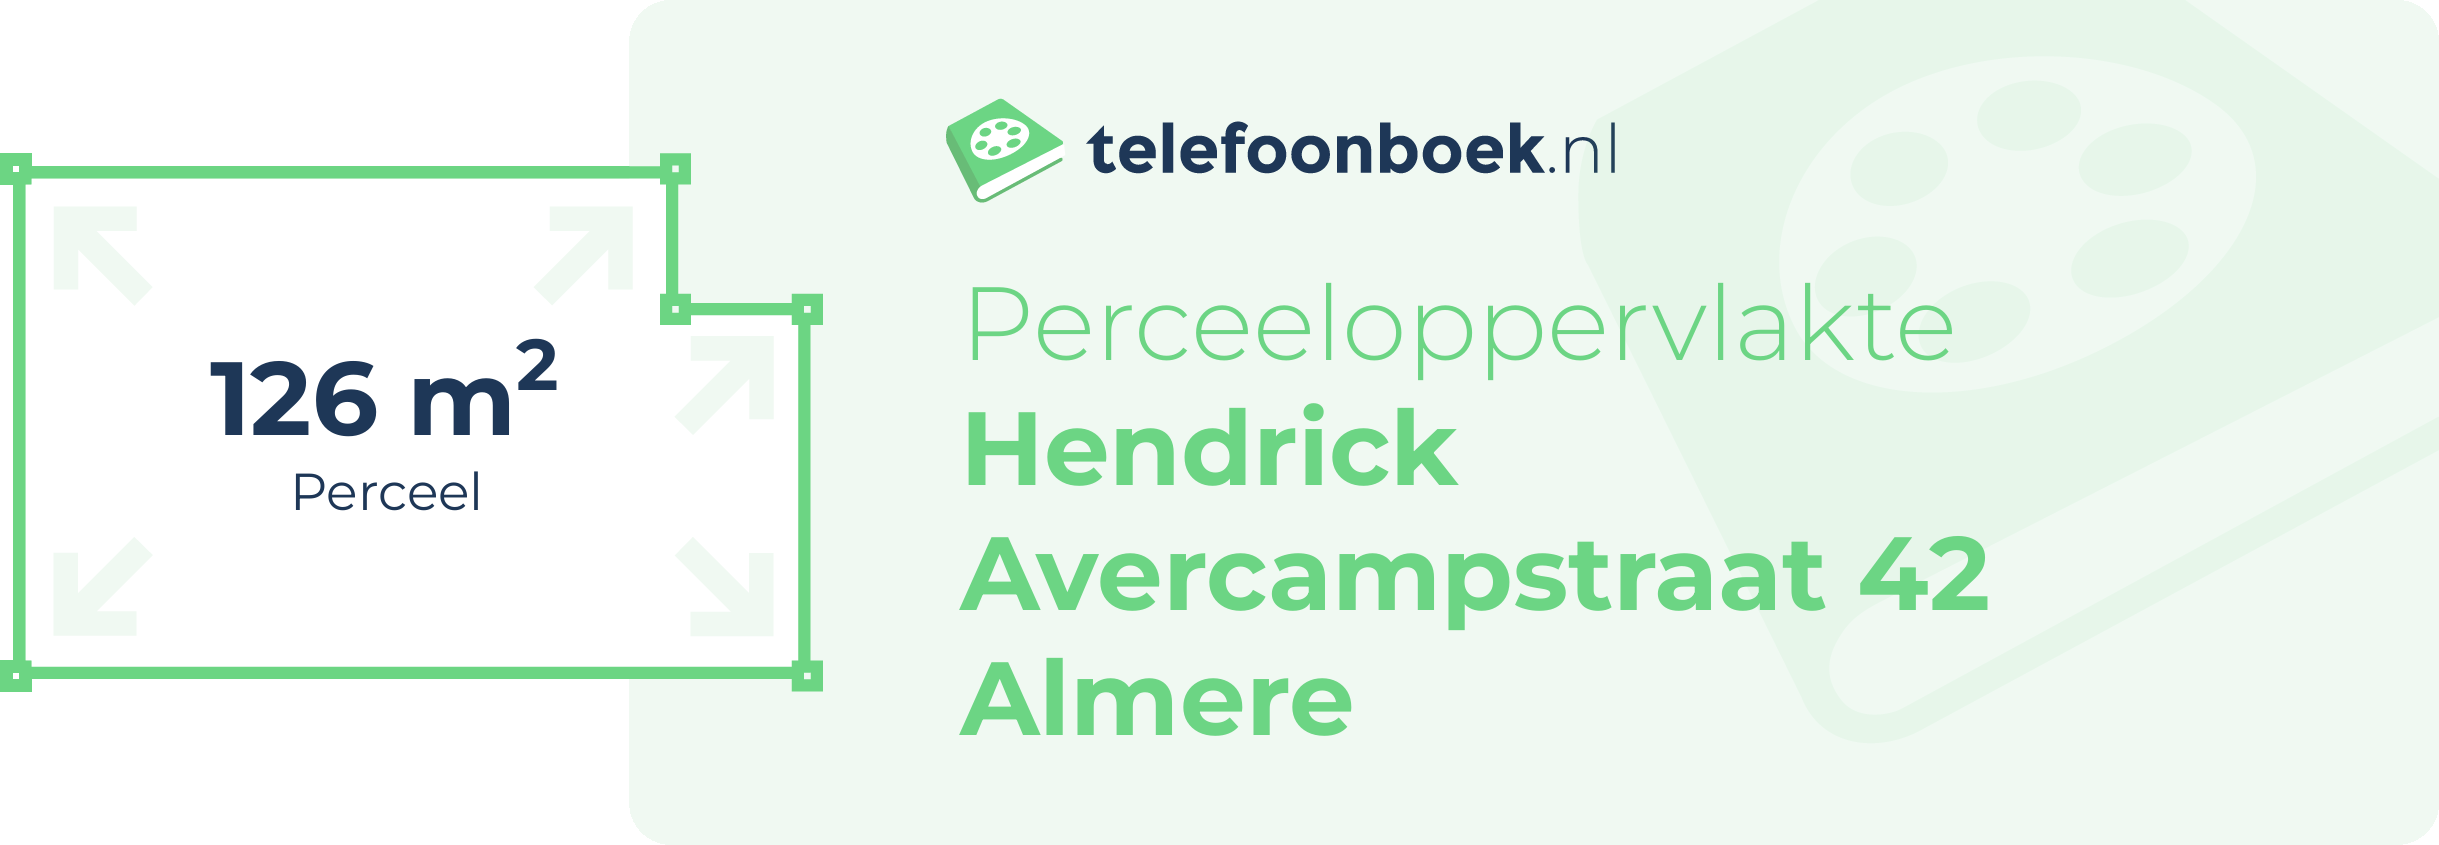 Perceeloppervlakte Hendrick Avercampstraat 42 Almere